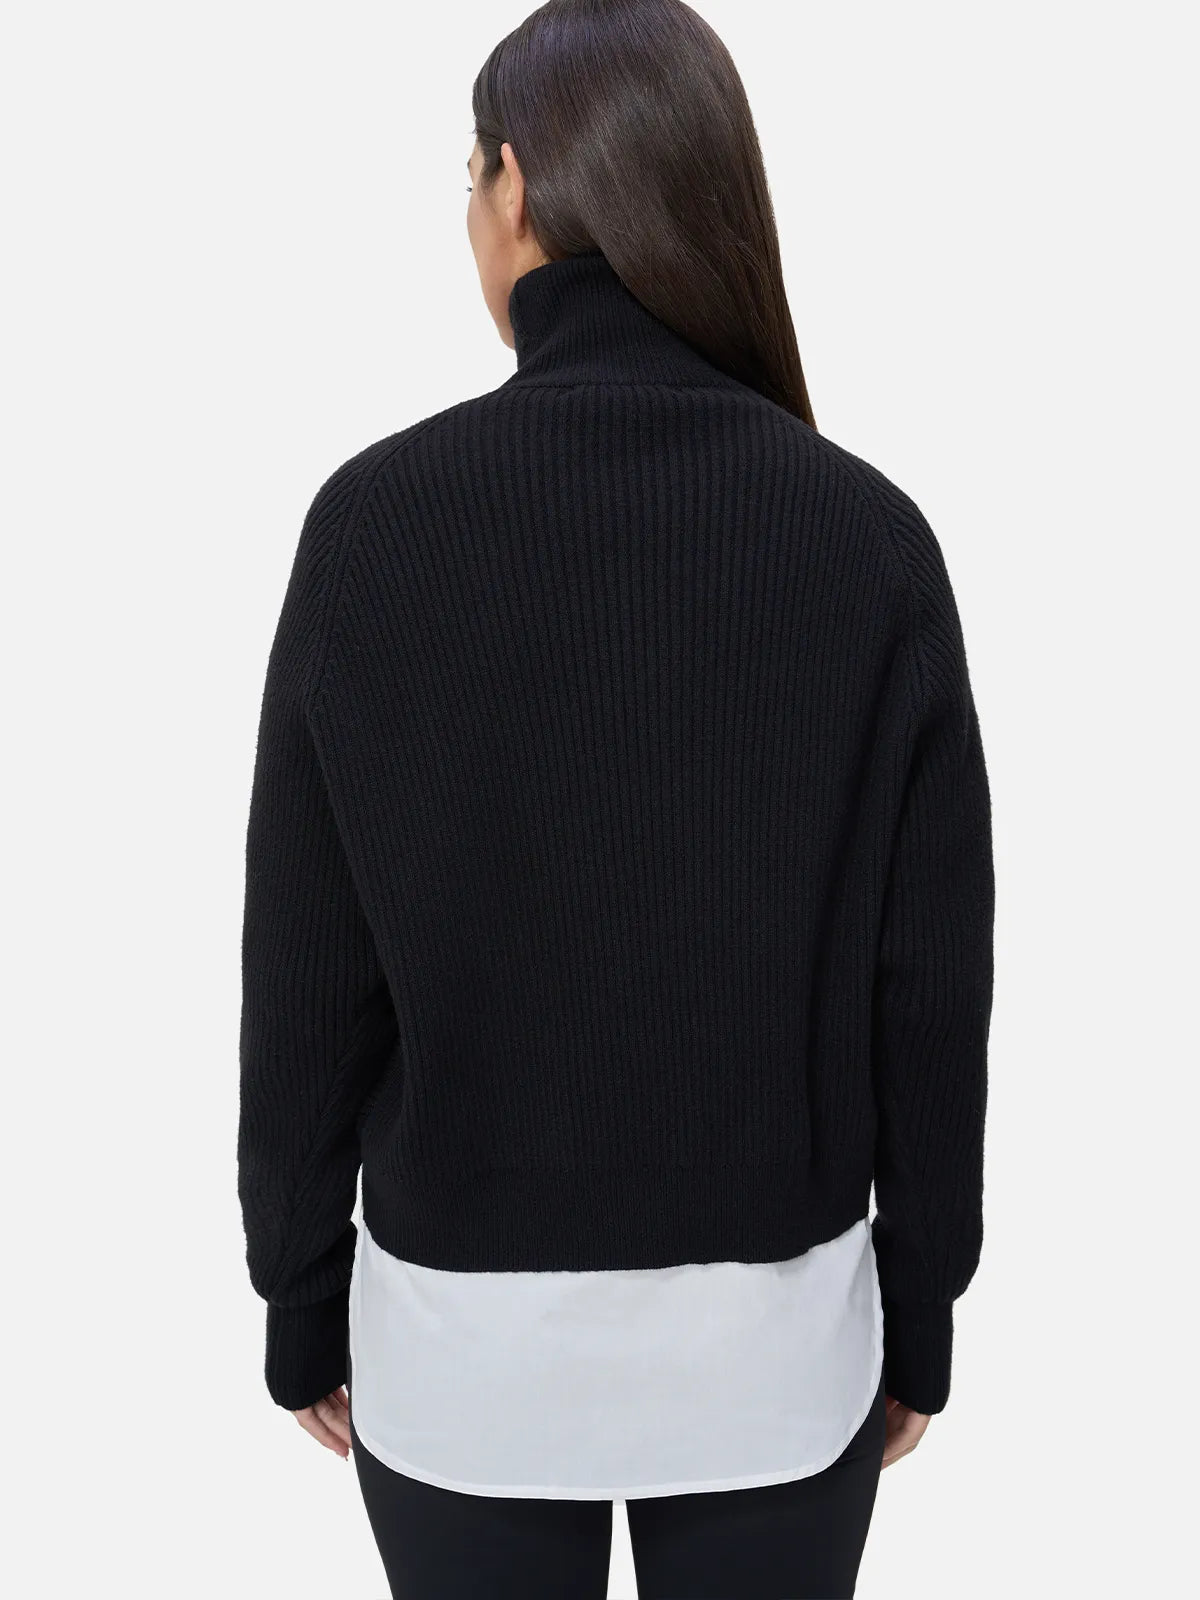 Zweiteiliger Pullover mit hohem Kragen und Farbblockdesign